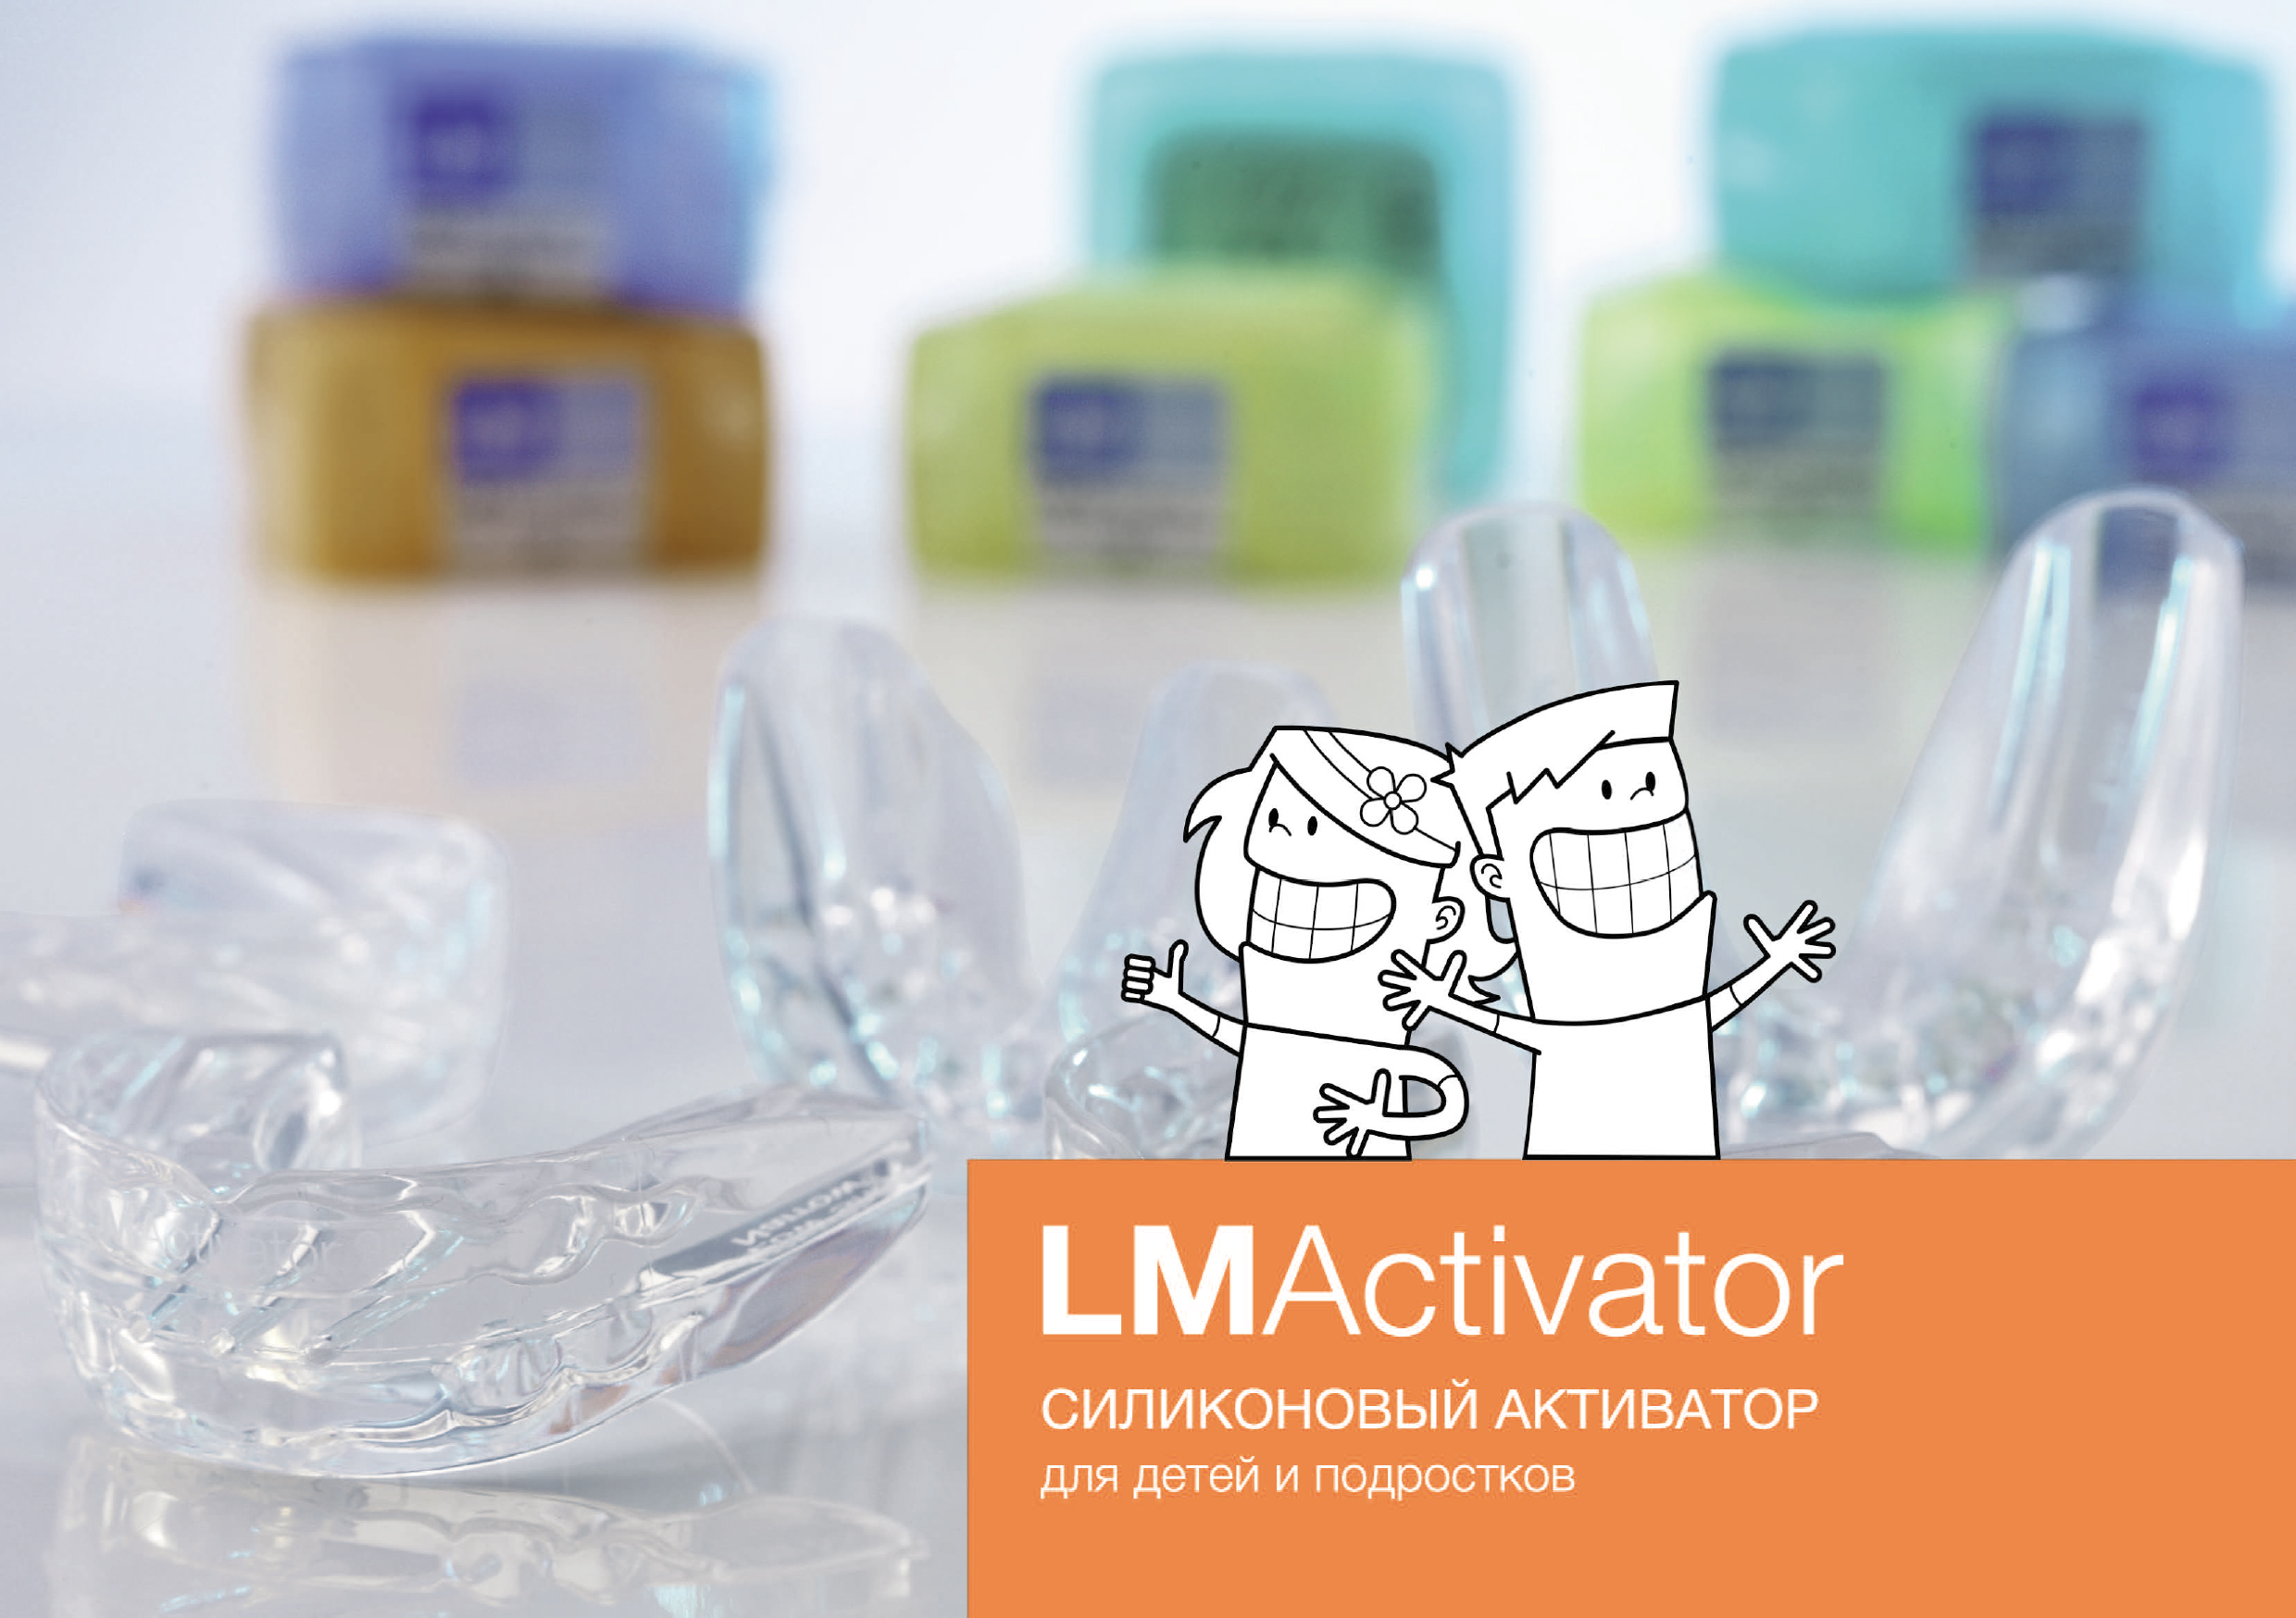 Новые LM-активаторы 2-го поколения